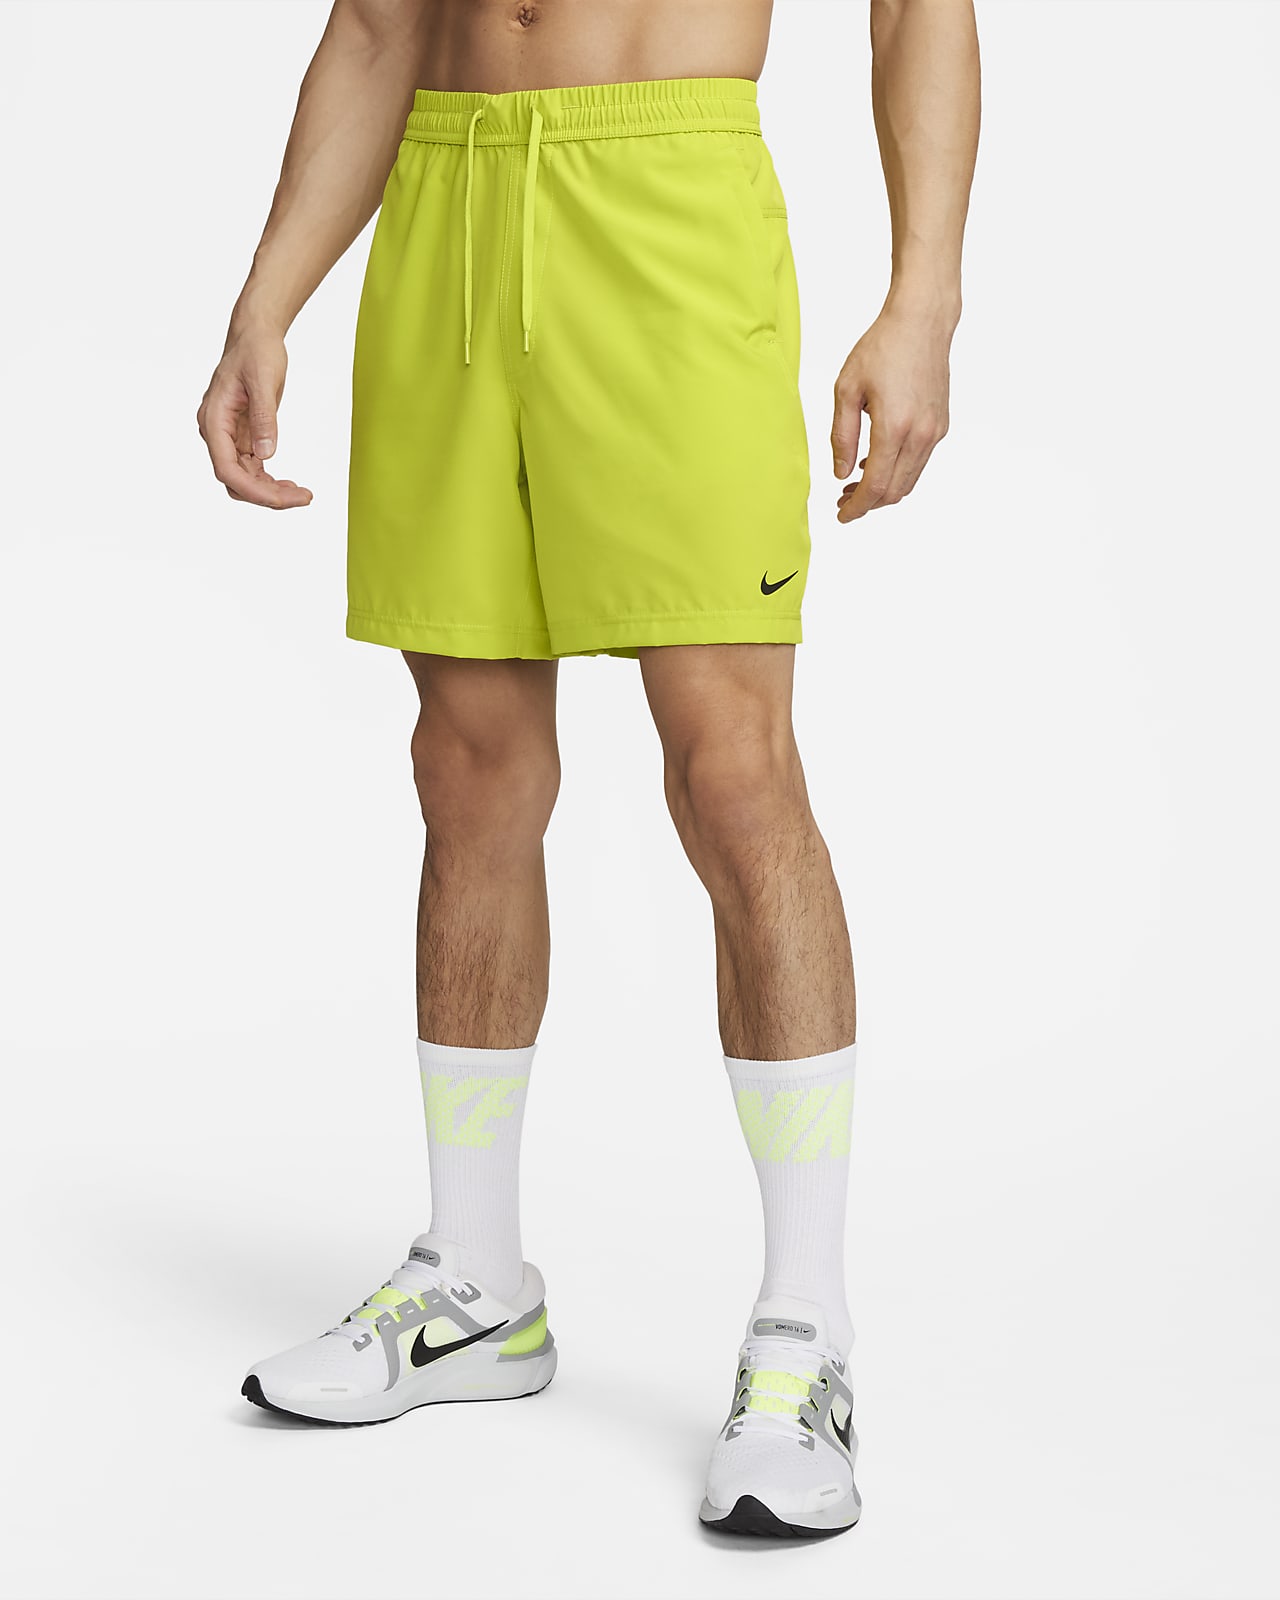 Desarmamiento Londres cubrir Nike Form Men's Dri-FIT 7" Unlined Versatile Shorts. Nike.com